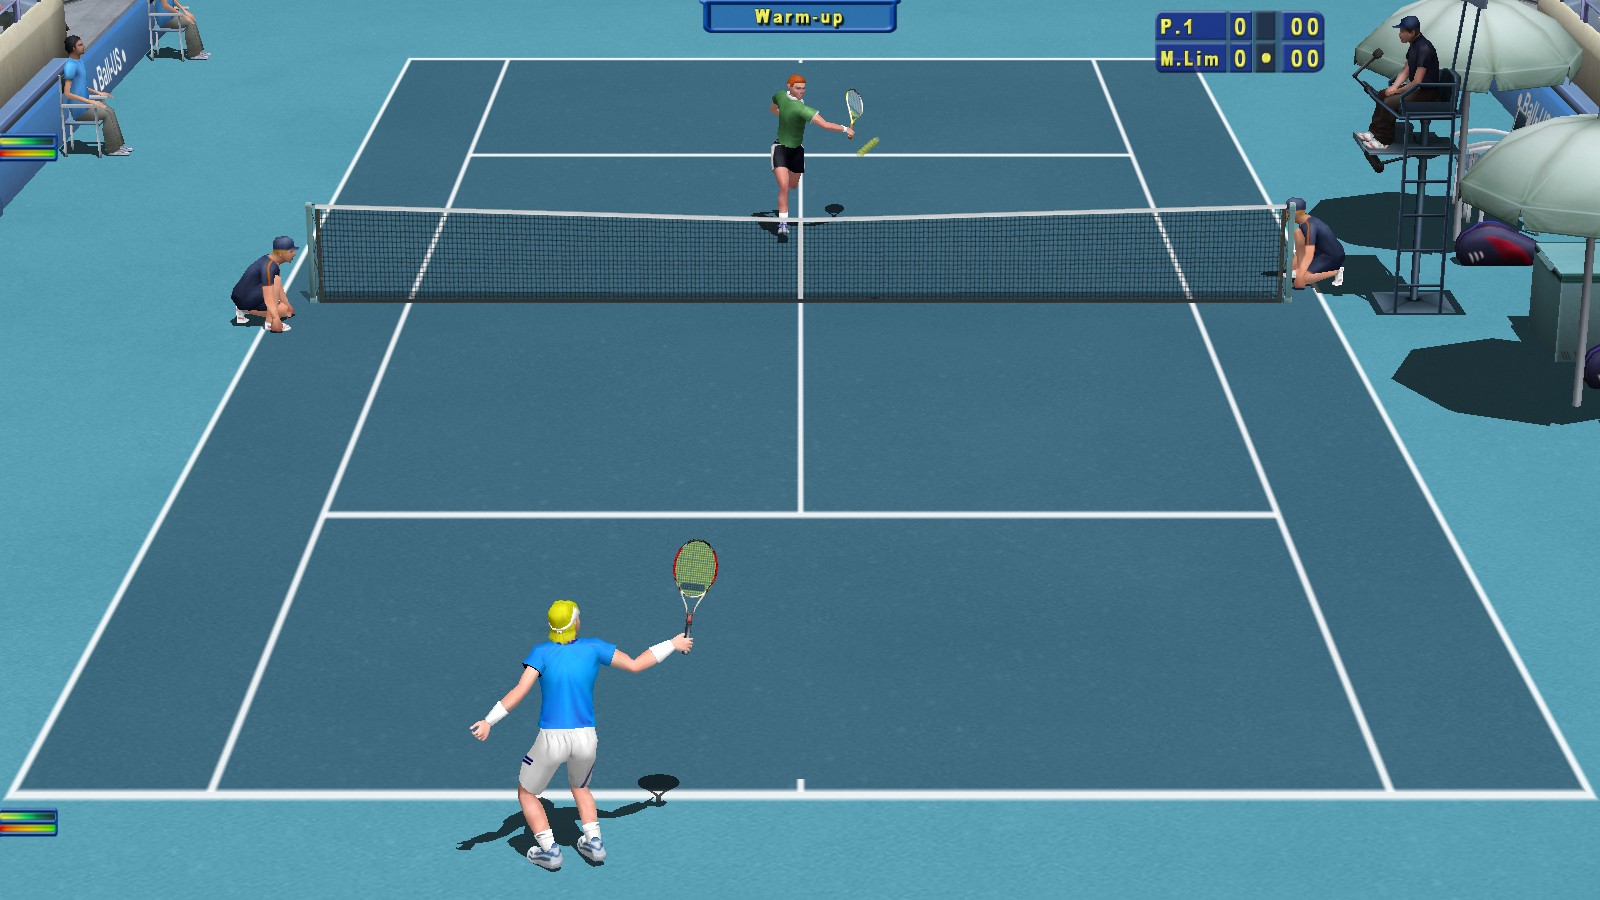 Теннис игра любителей. Tennis Elbow 2013. Tennis Elbow 2013 системные требования. Игра в теннис. Гейм в теннисе.